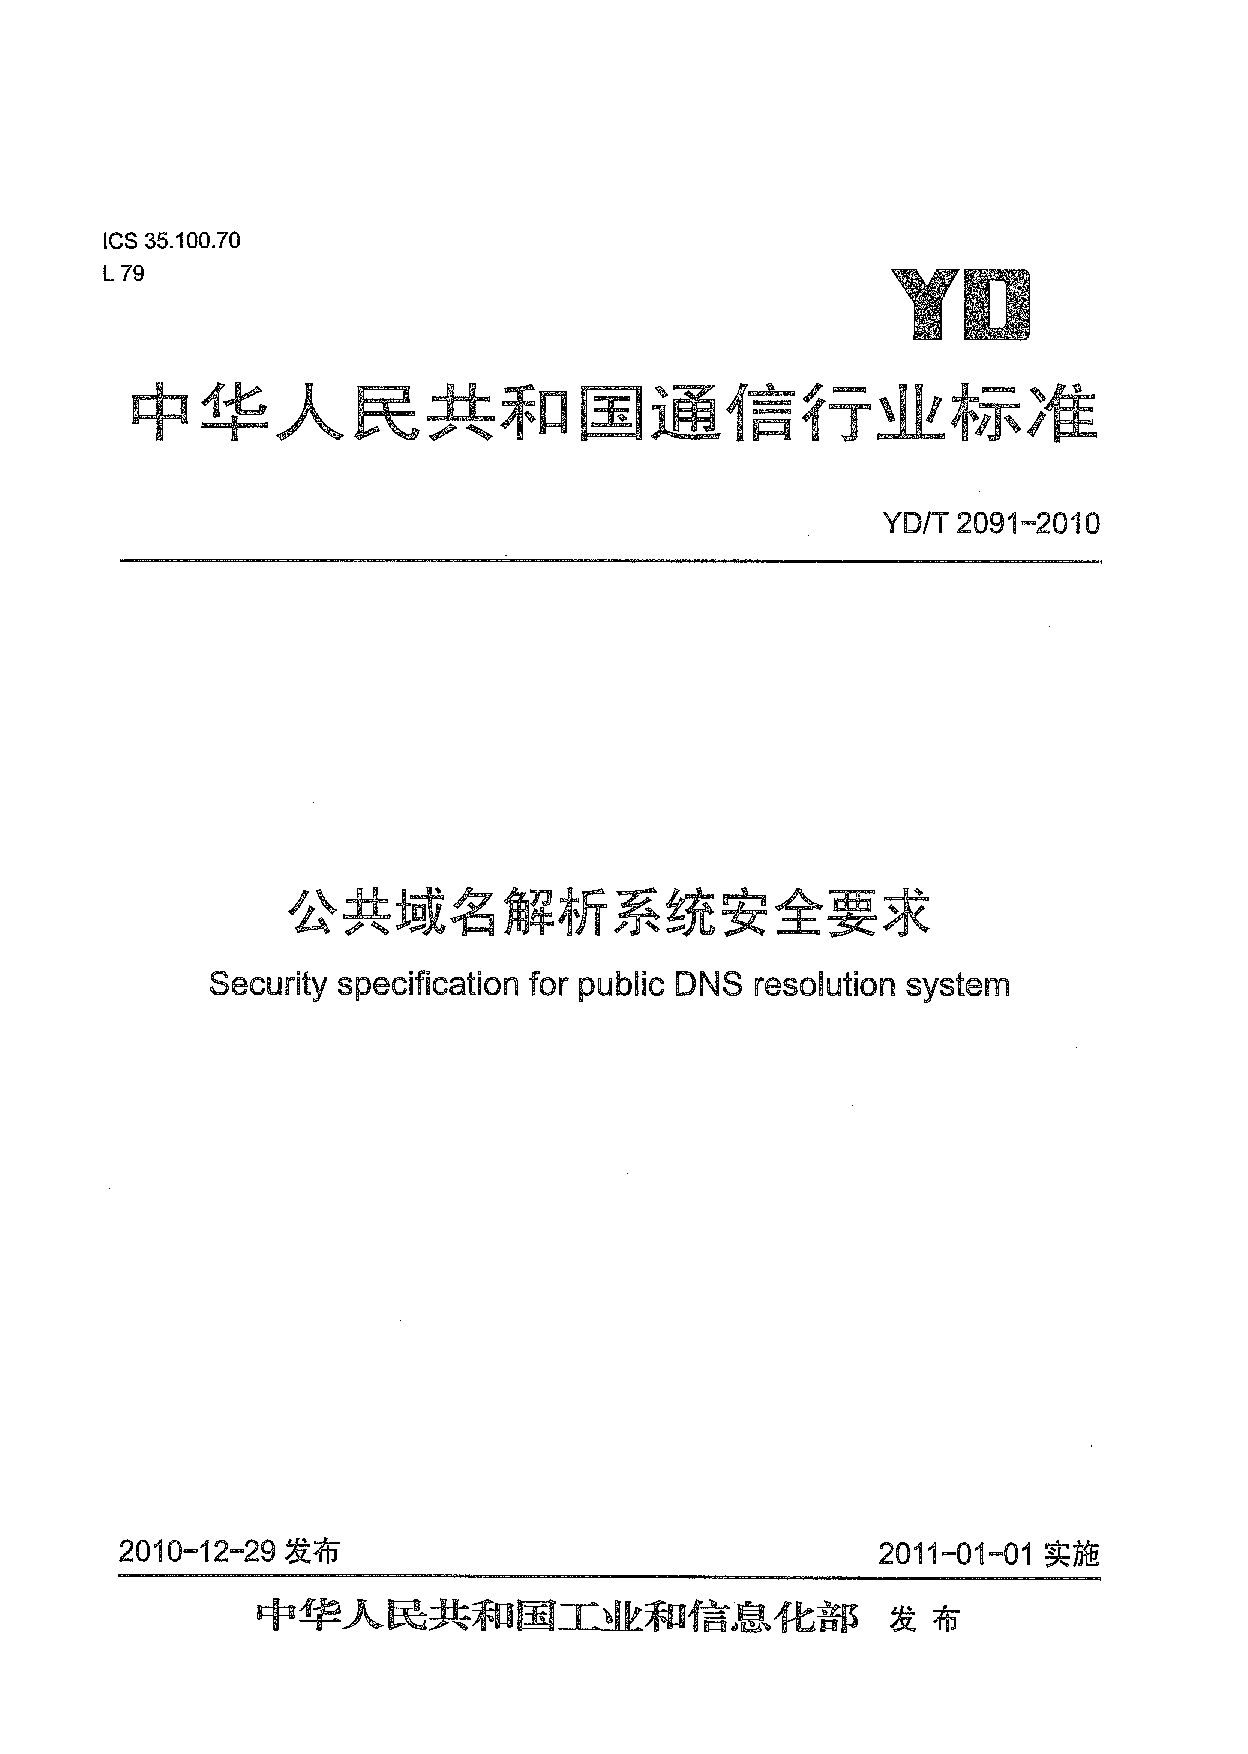 YD/T 2091-2010